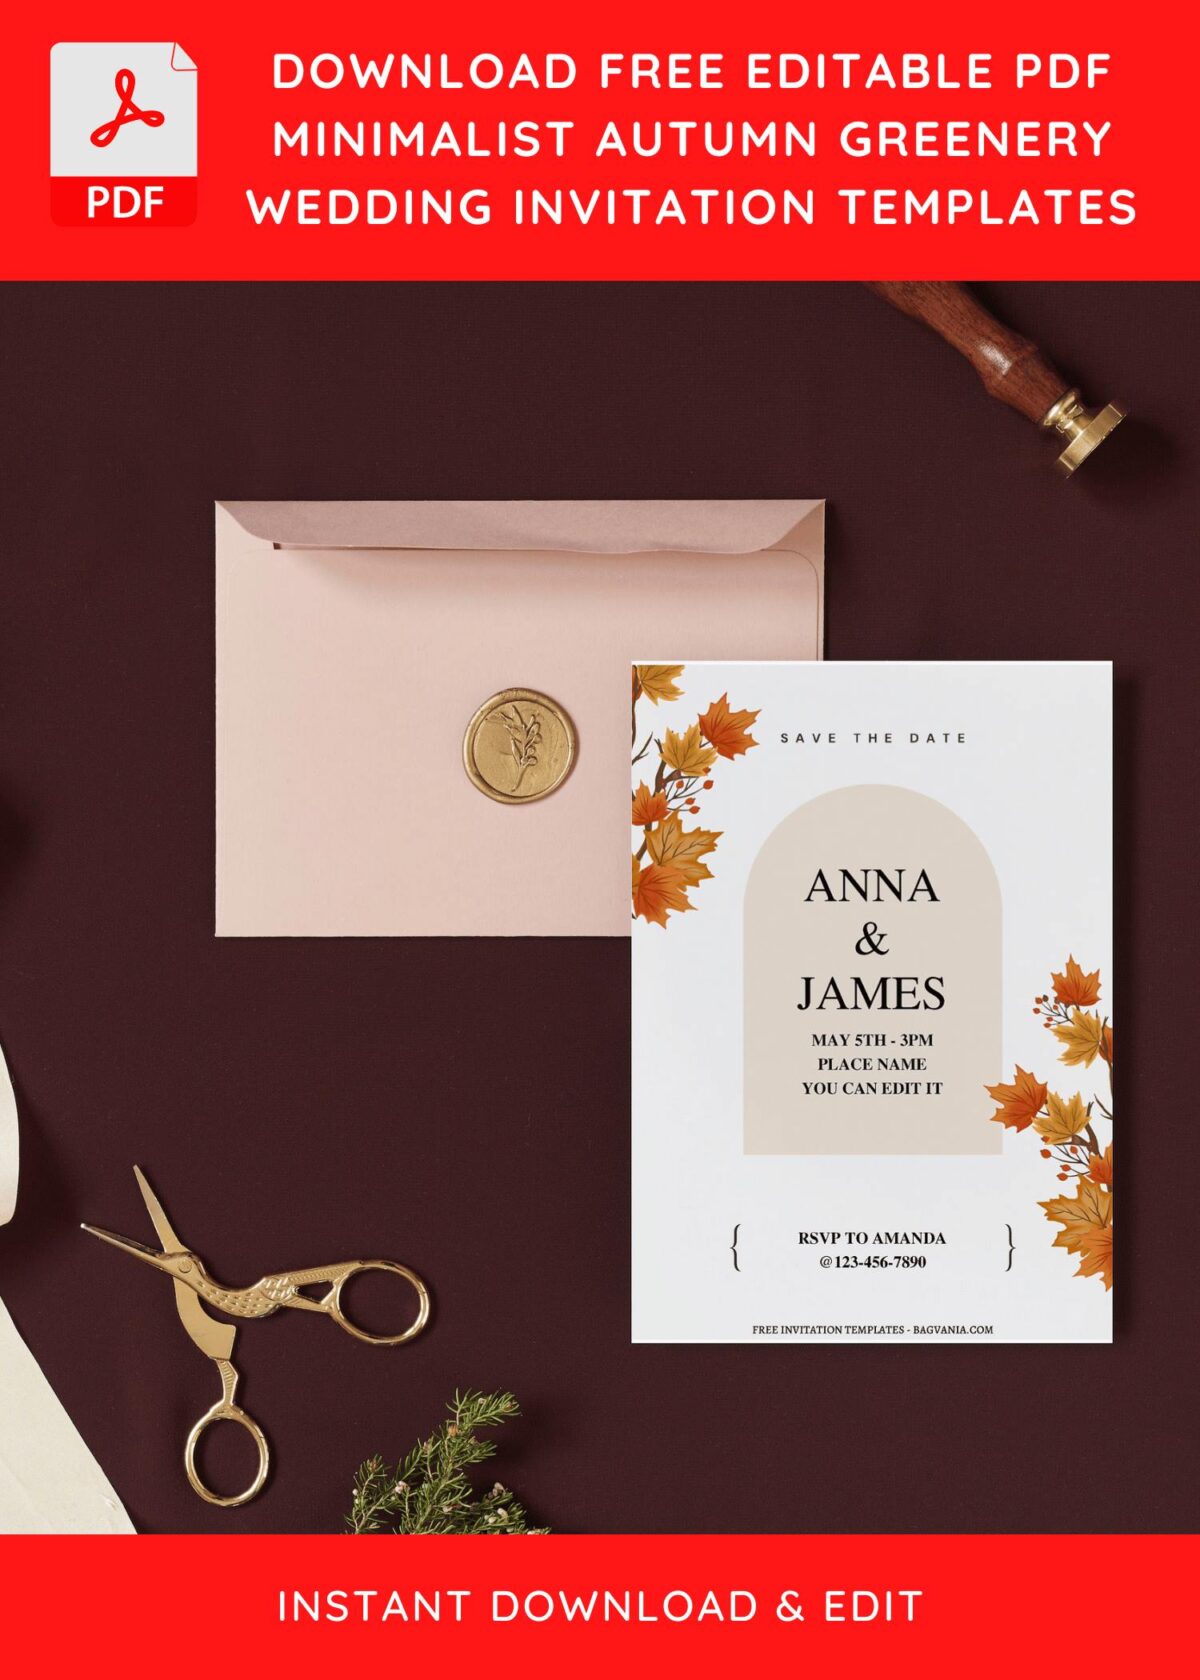 (Free Editable PDF) Aesthetic Autumn Leaves Wedding Invitation Templates I